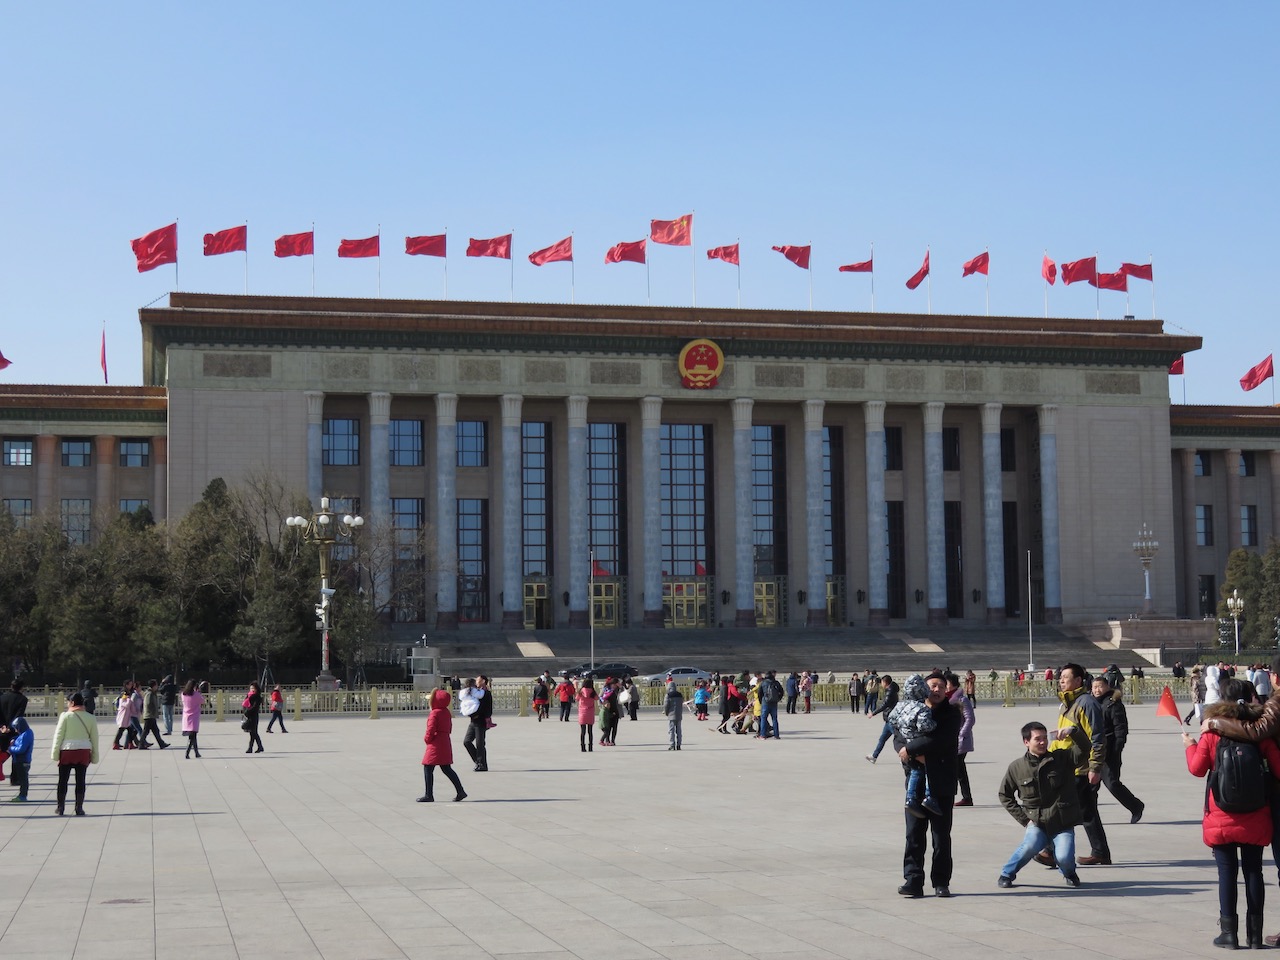 Mao's Mausoleum